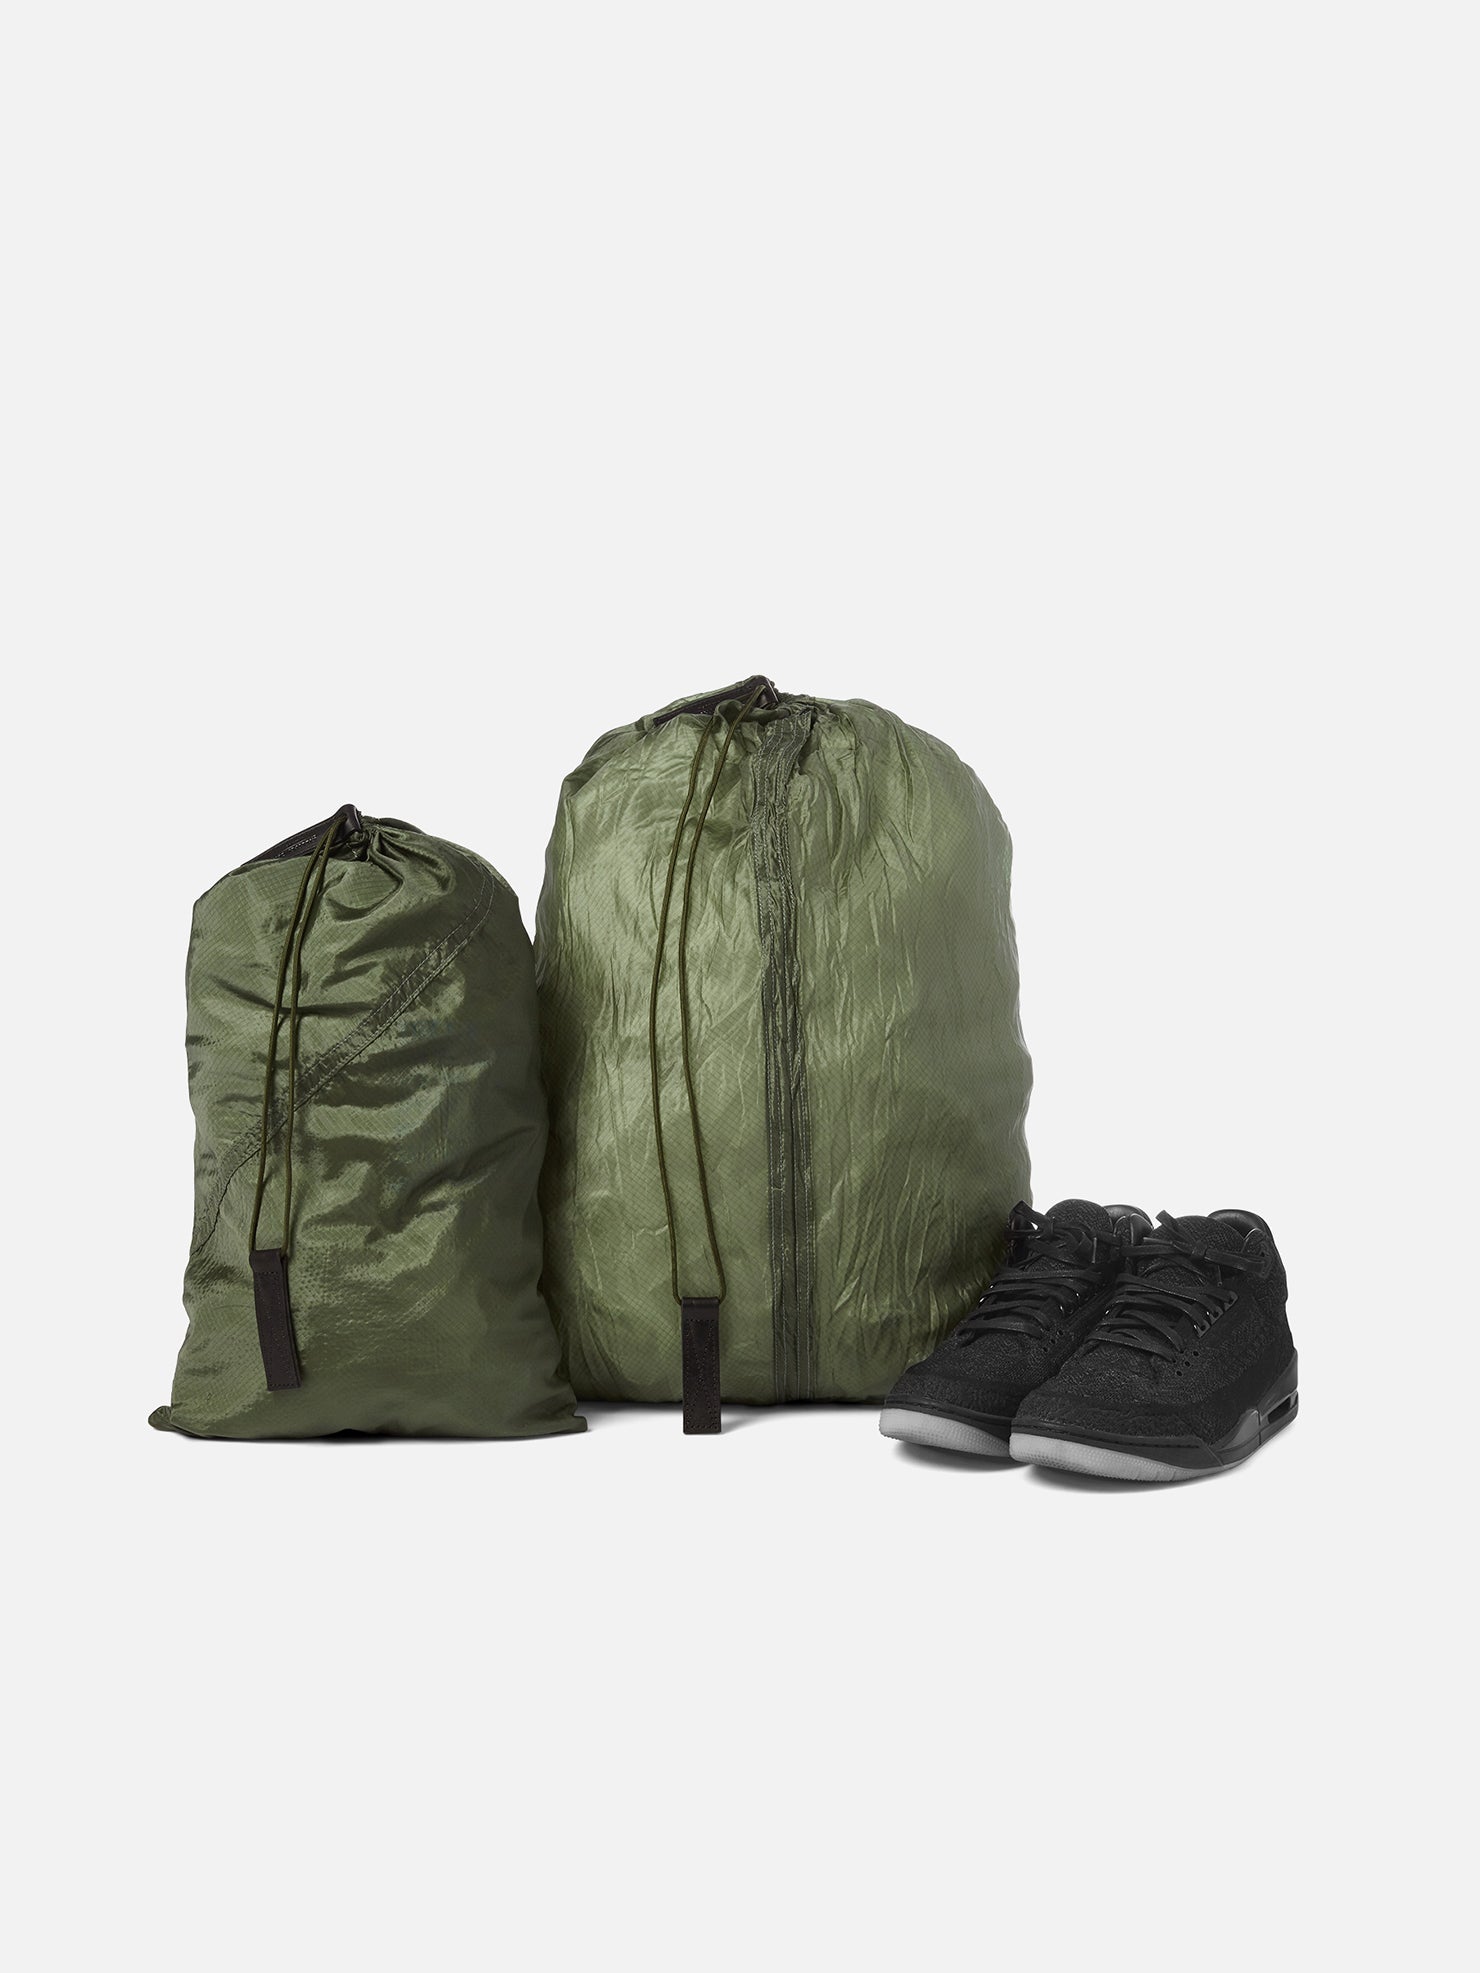 PARACHUTE BAG 2.0 - Laundry Bag | KILLSPENCER® - Olive Drab Parachute